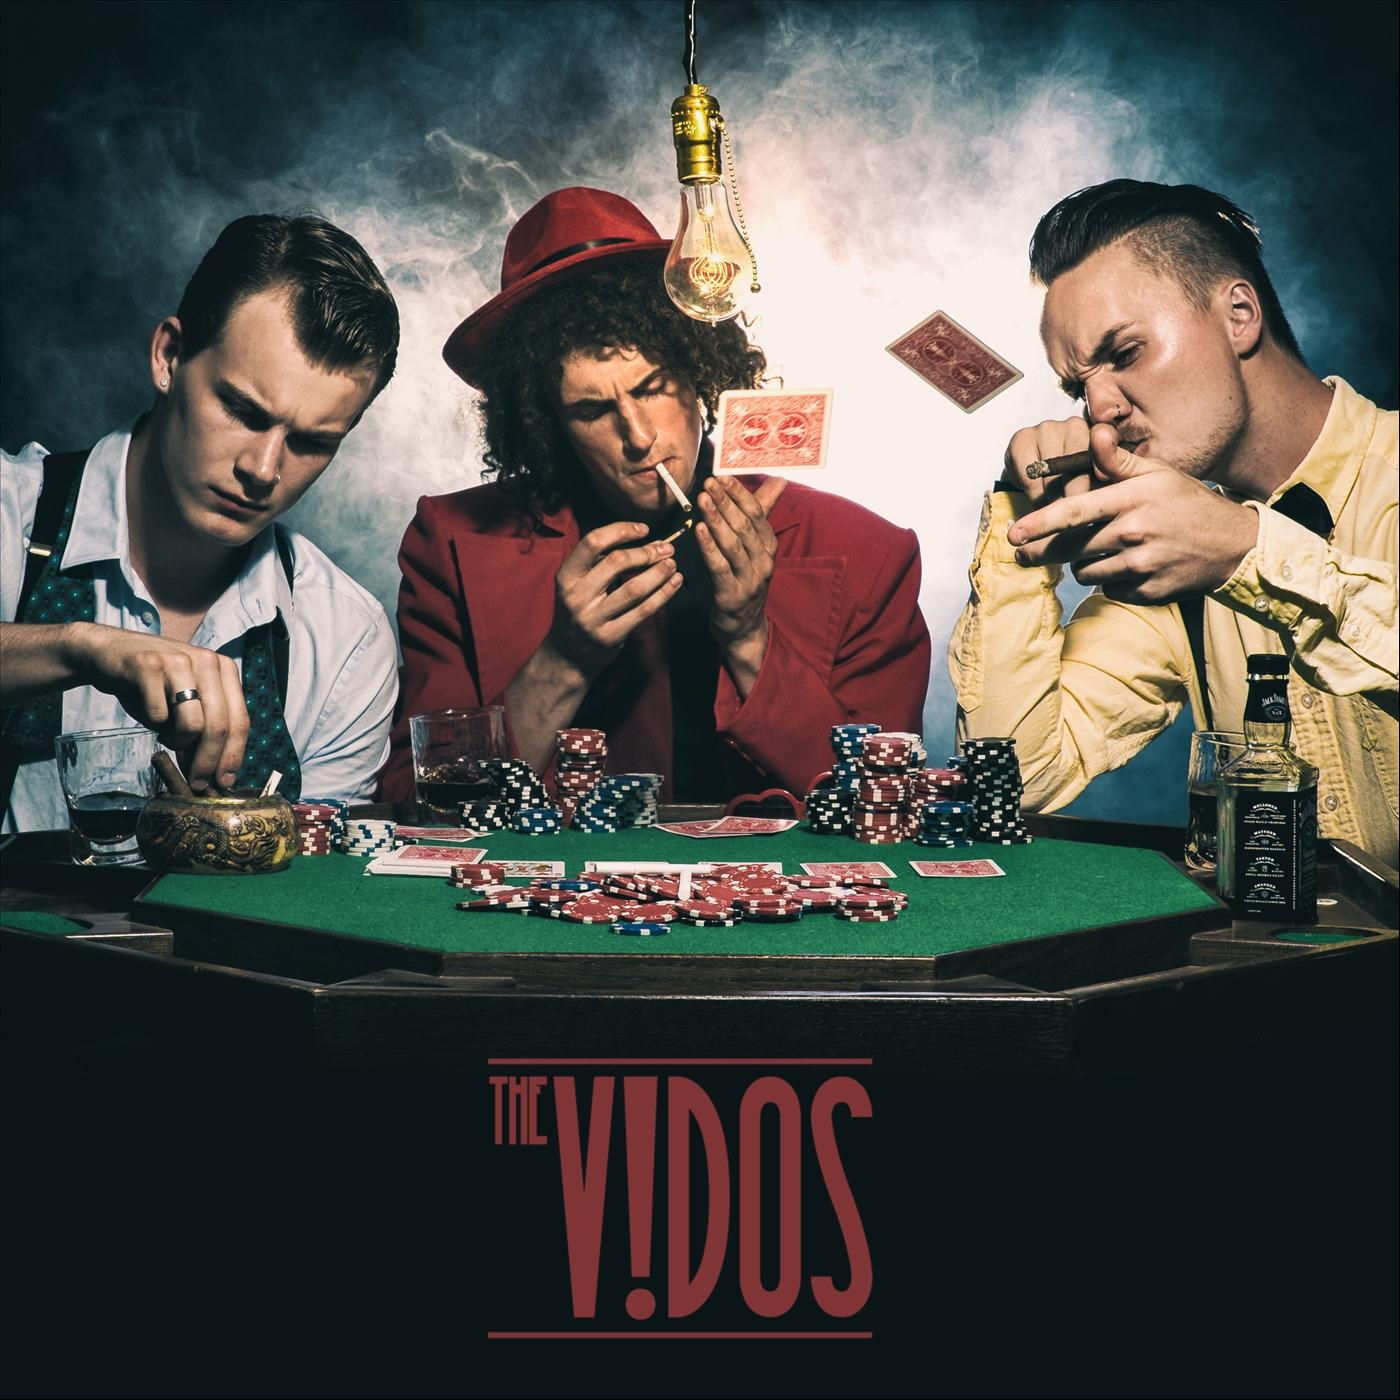 The Vidos - Criminals (Single) (2018) Album Info